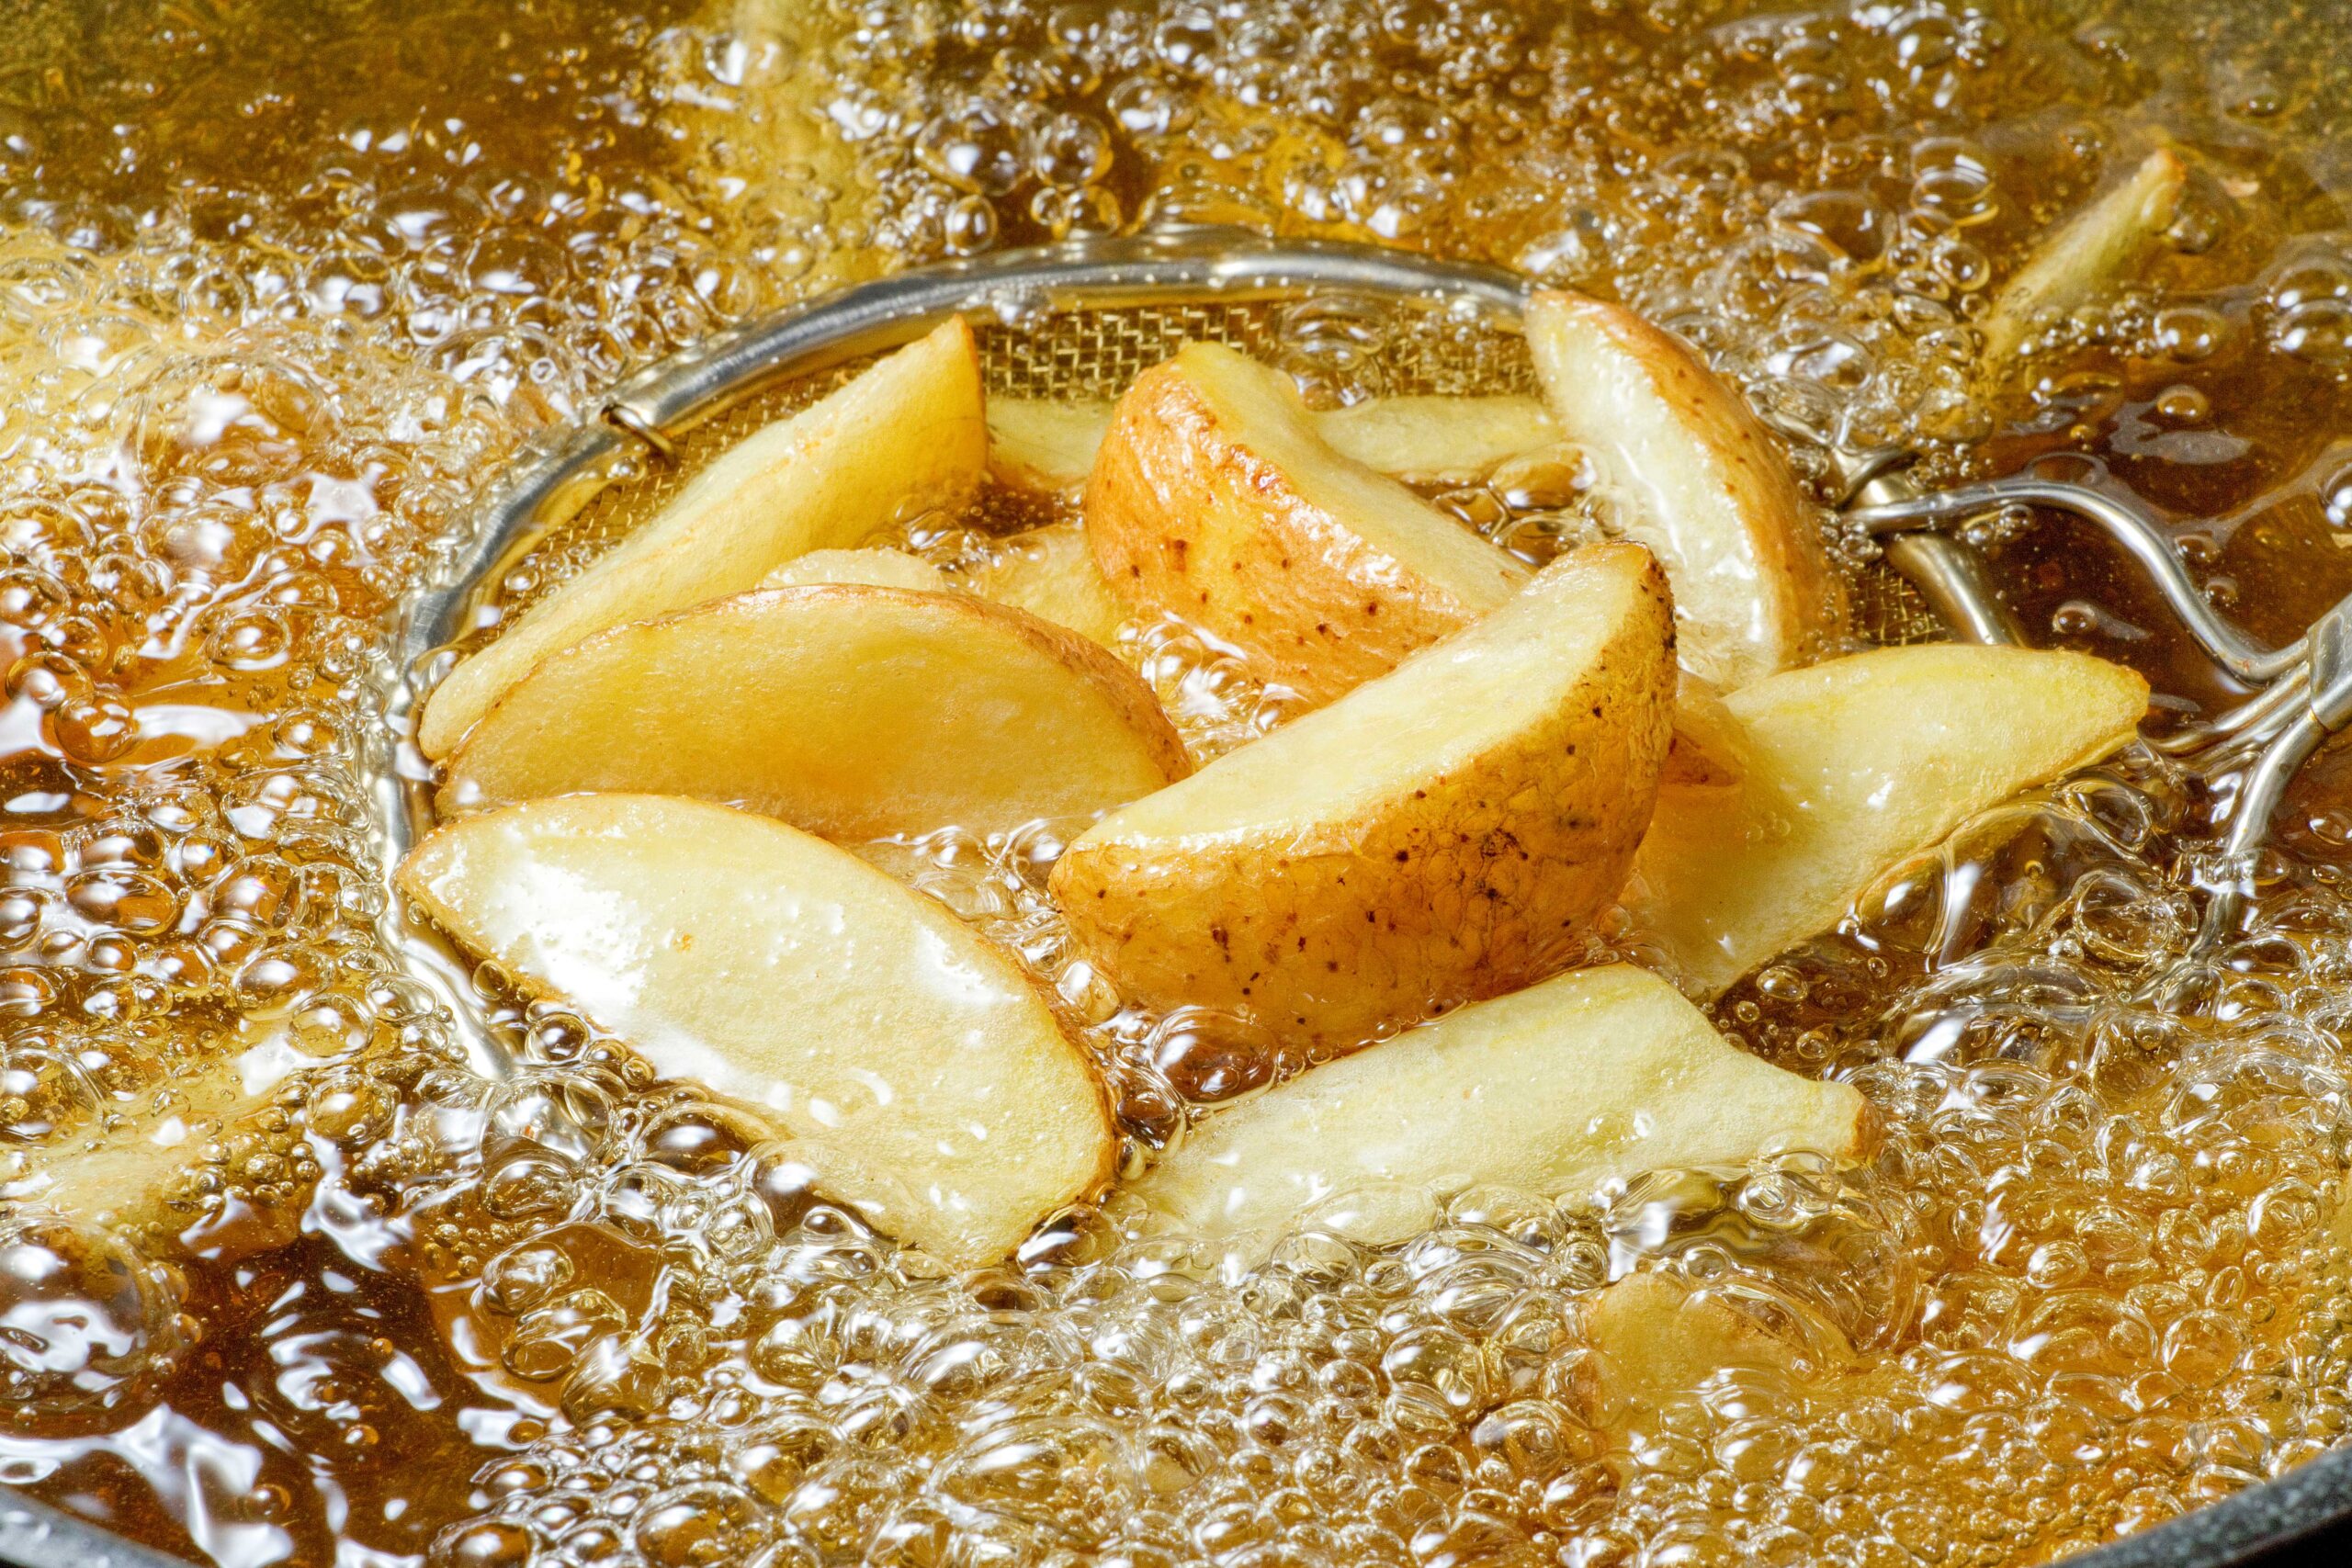 Potato wedges in fryer oil